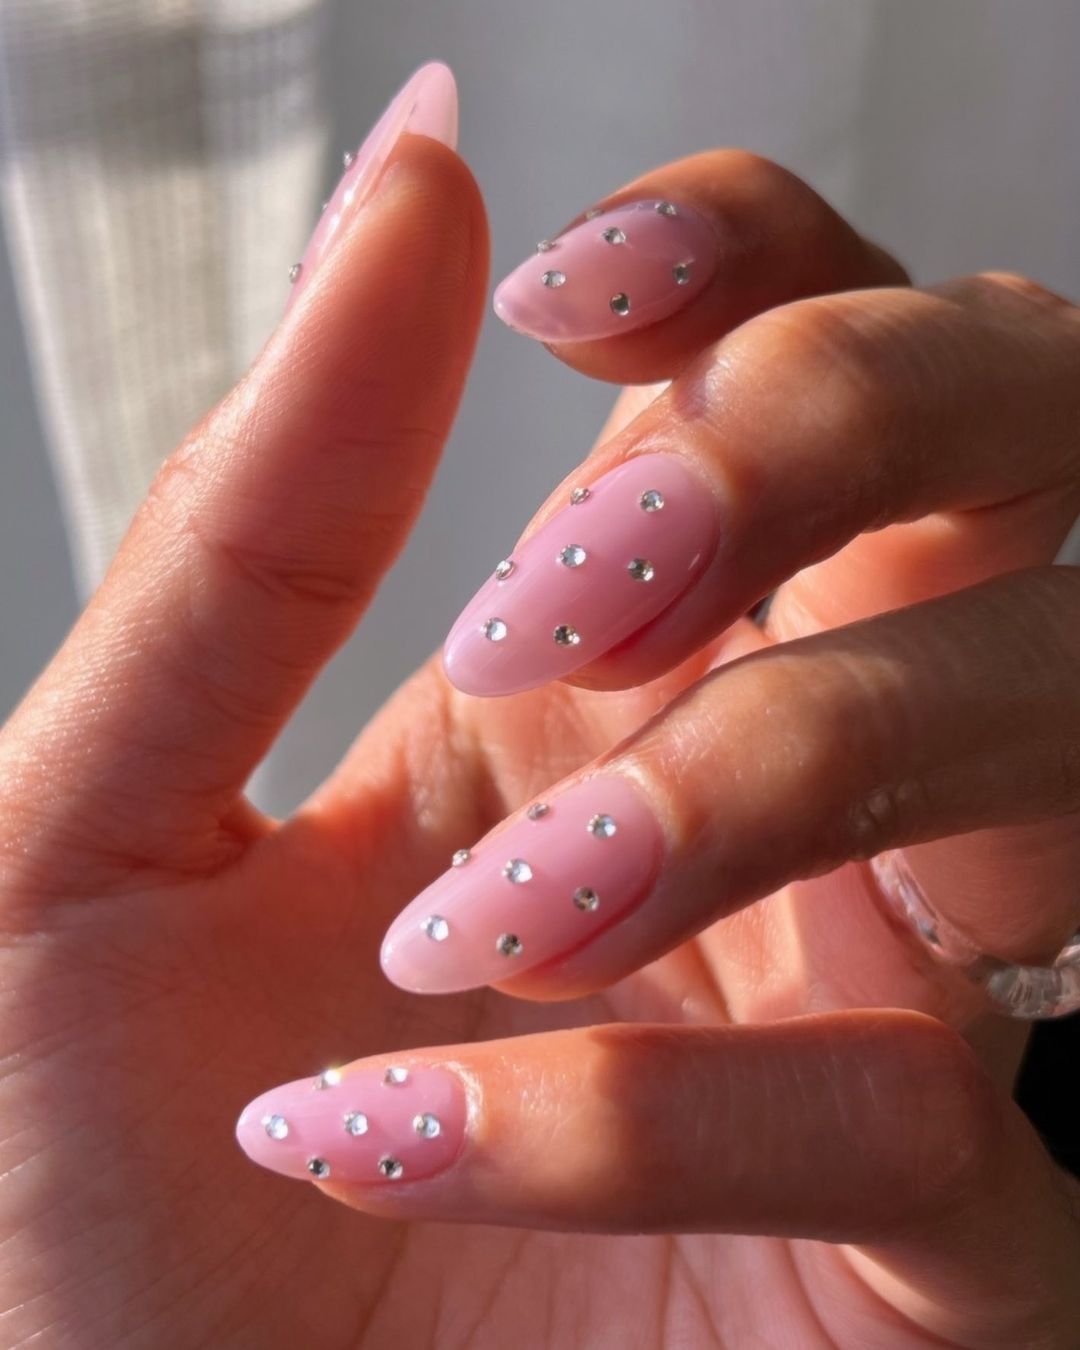 Embellished 3D nails